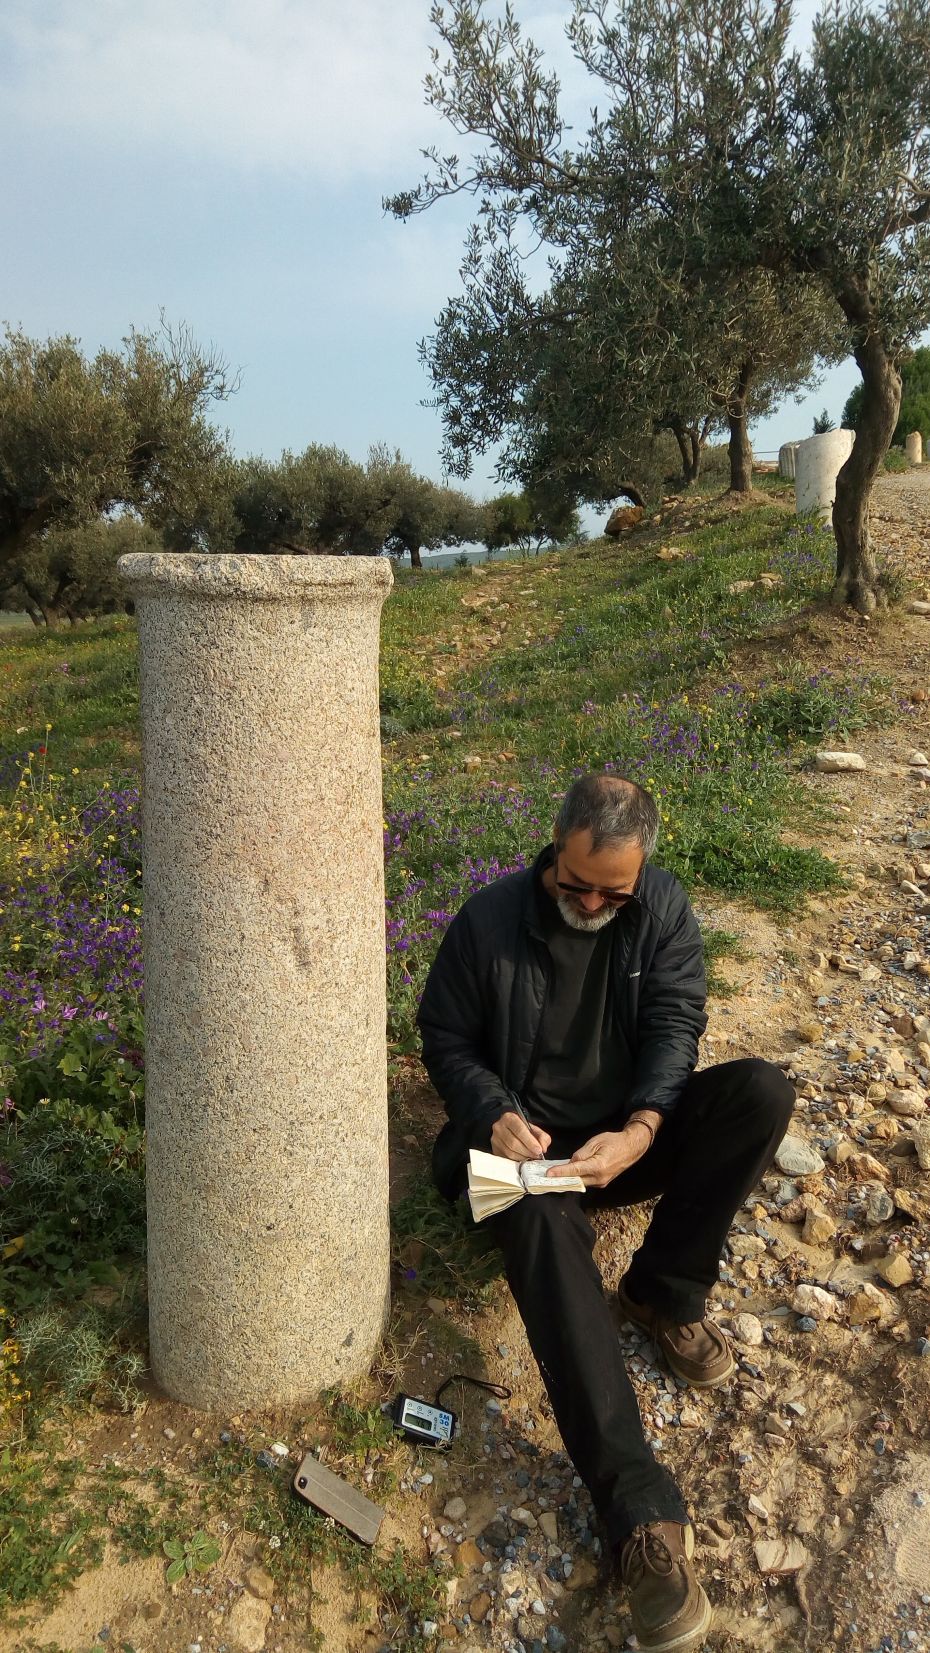 Fût de colonne d’origine sarde observé sur un site au Maghreb